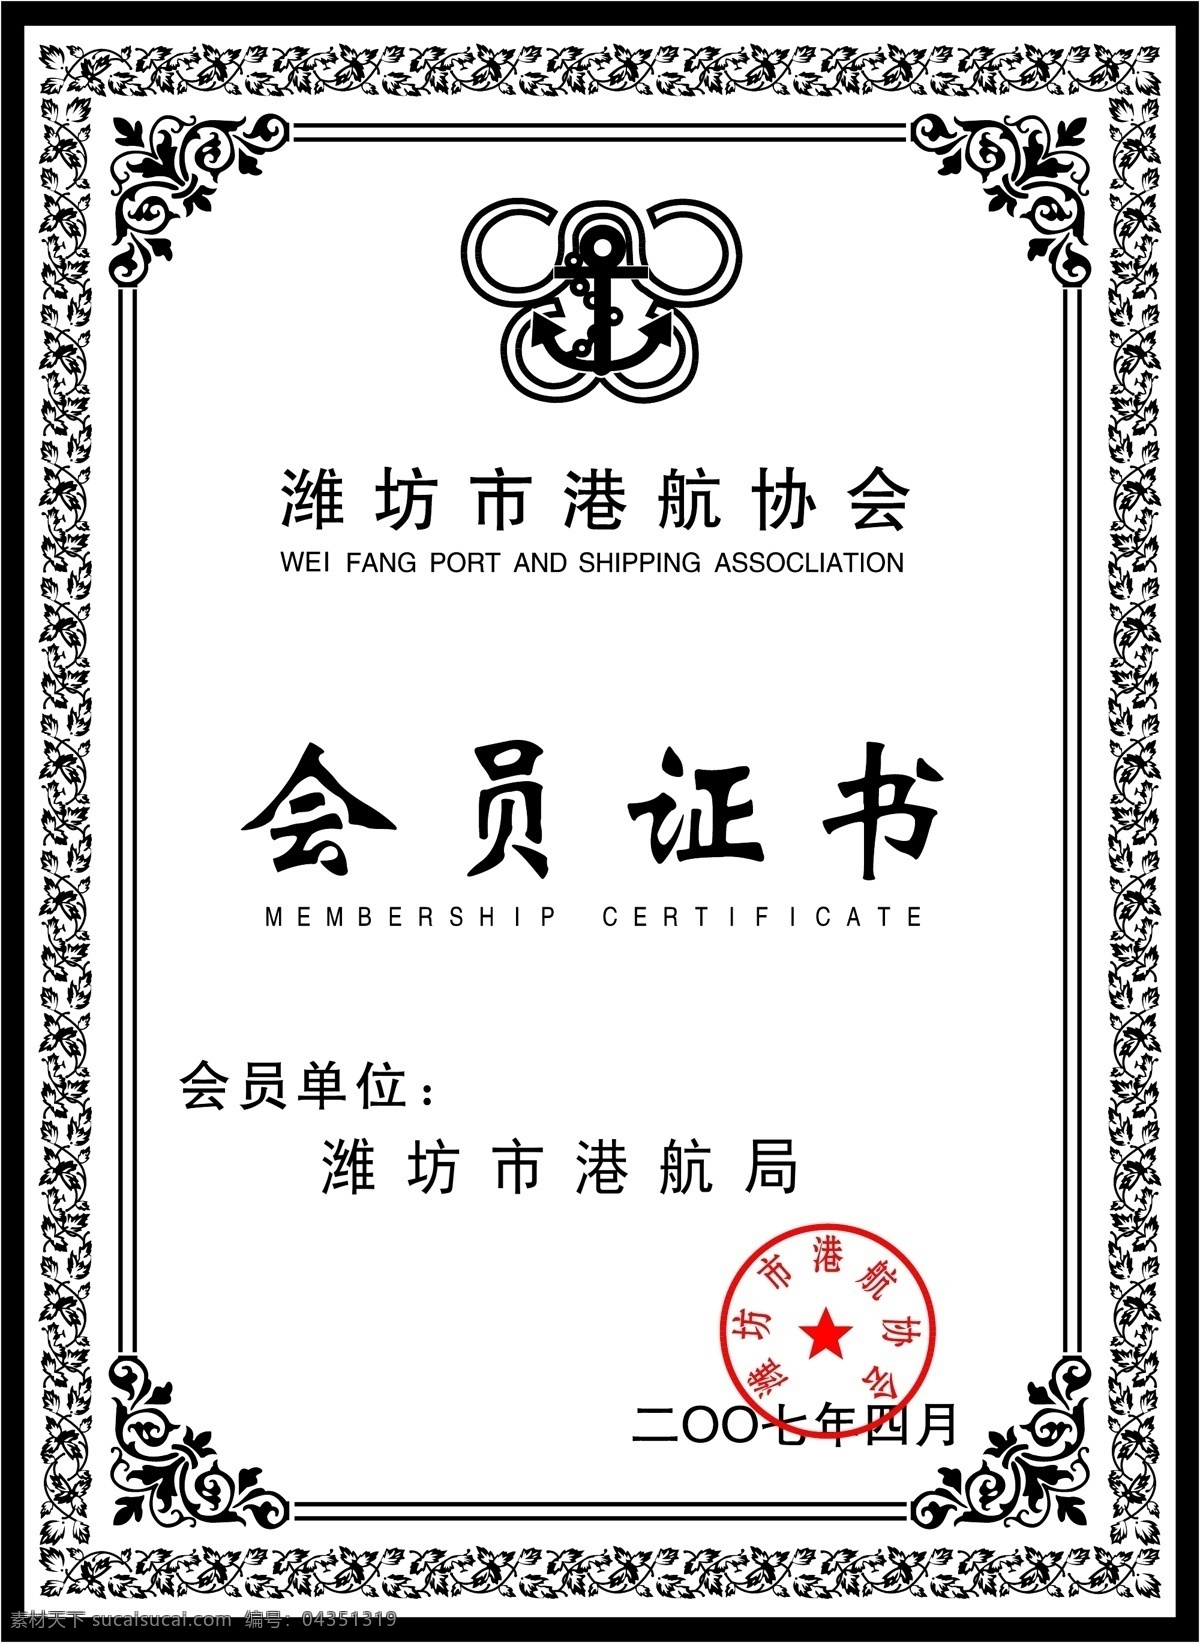 潍坊市 港 行 协会 港行协会 奖牌 铜牌 会员证书 授权书